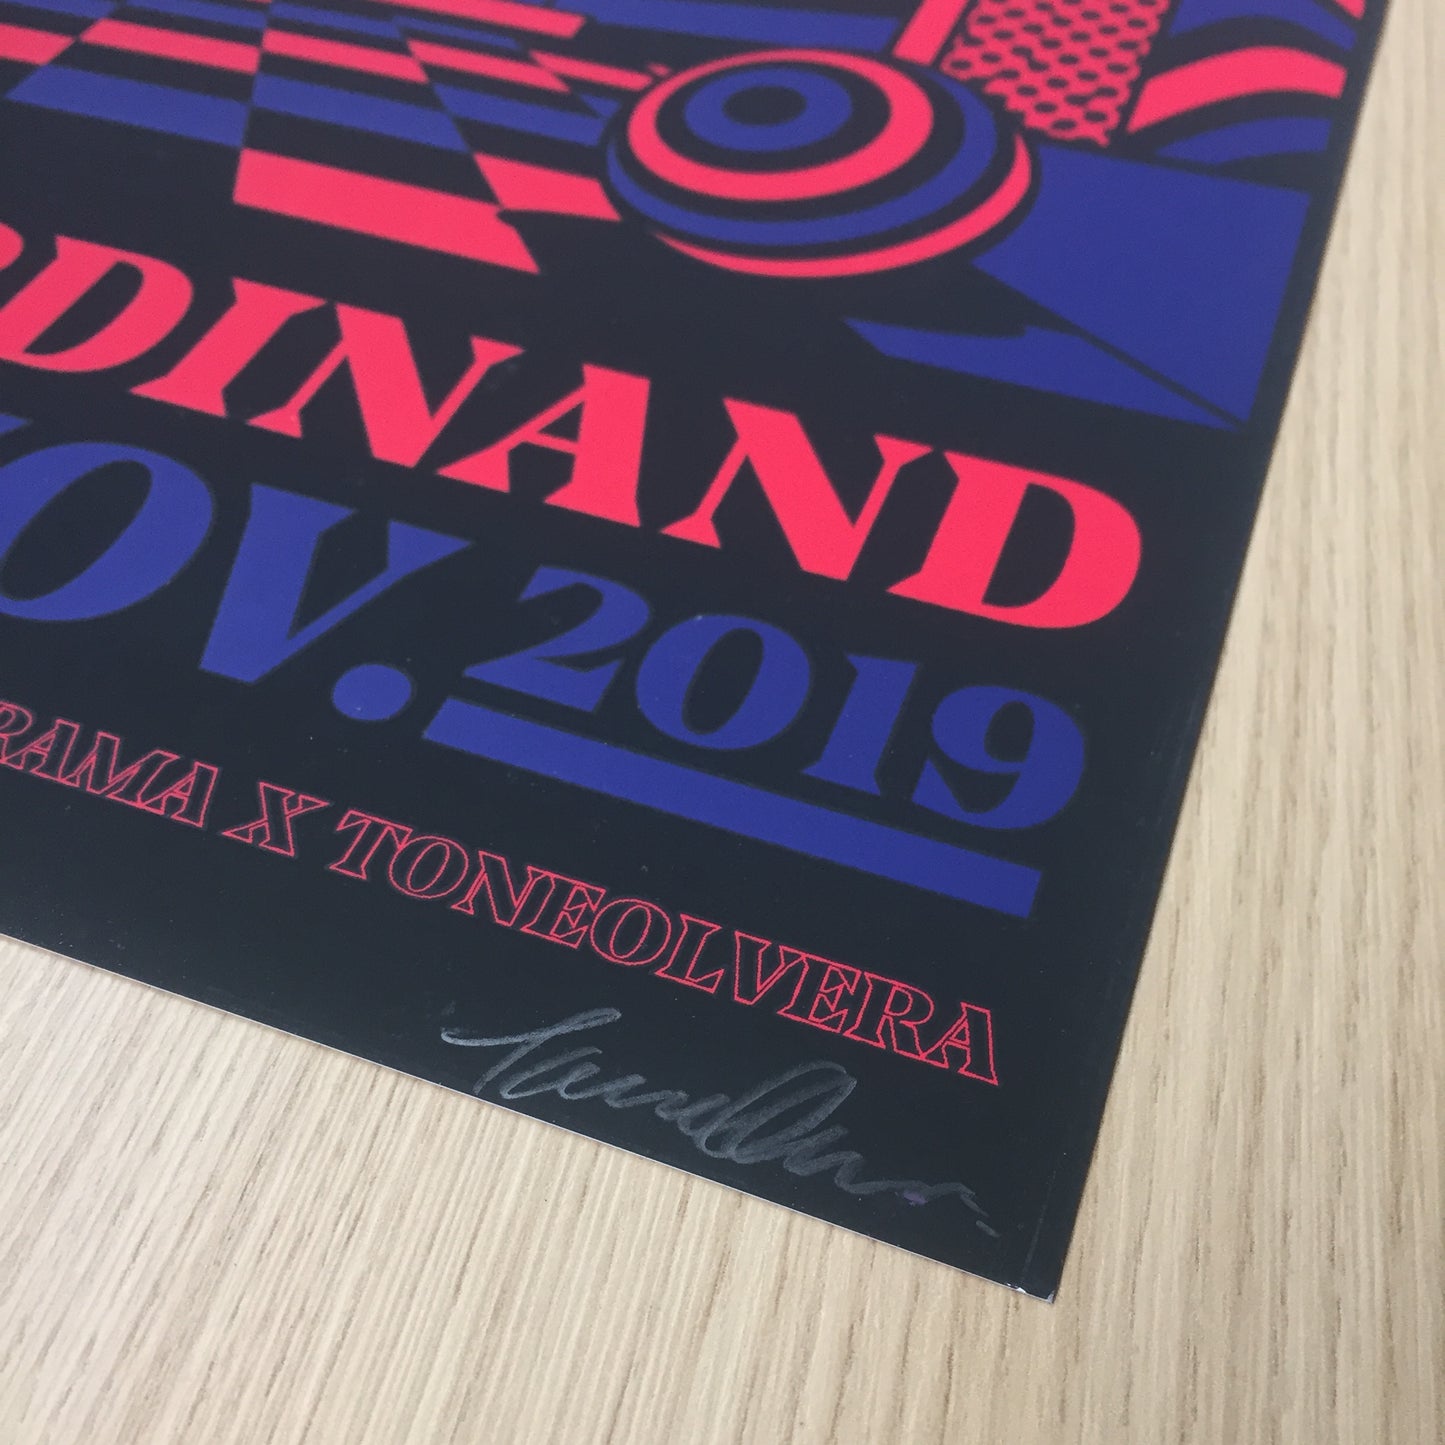 Franz Ferdinand en la Ciudad de Mexico 2019 Tone Olvera Gig Poster